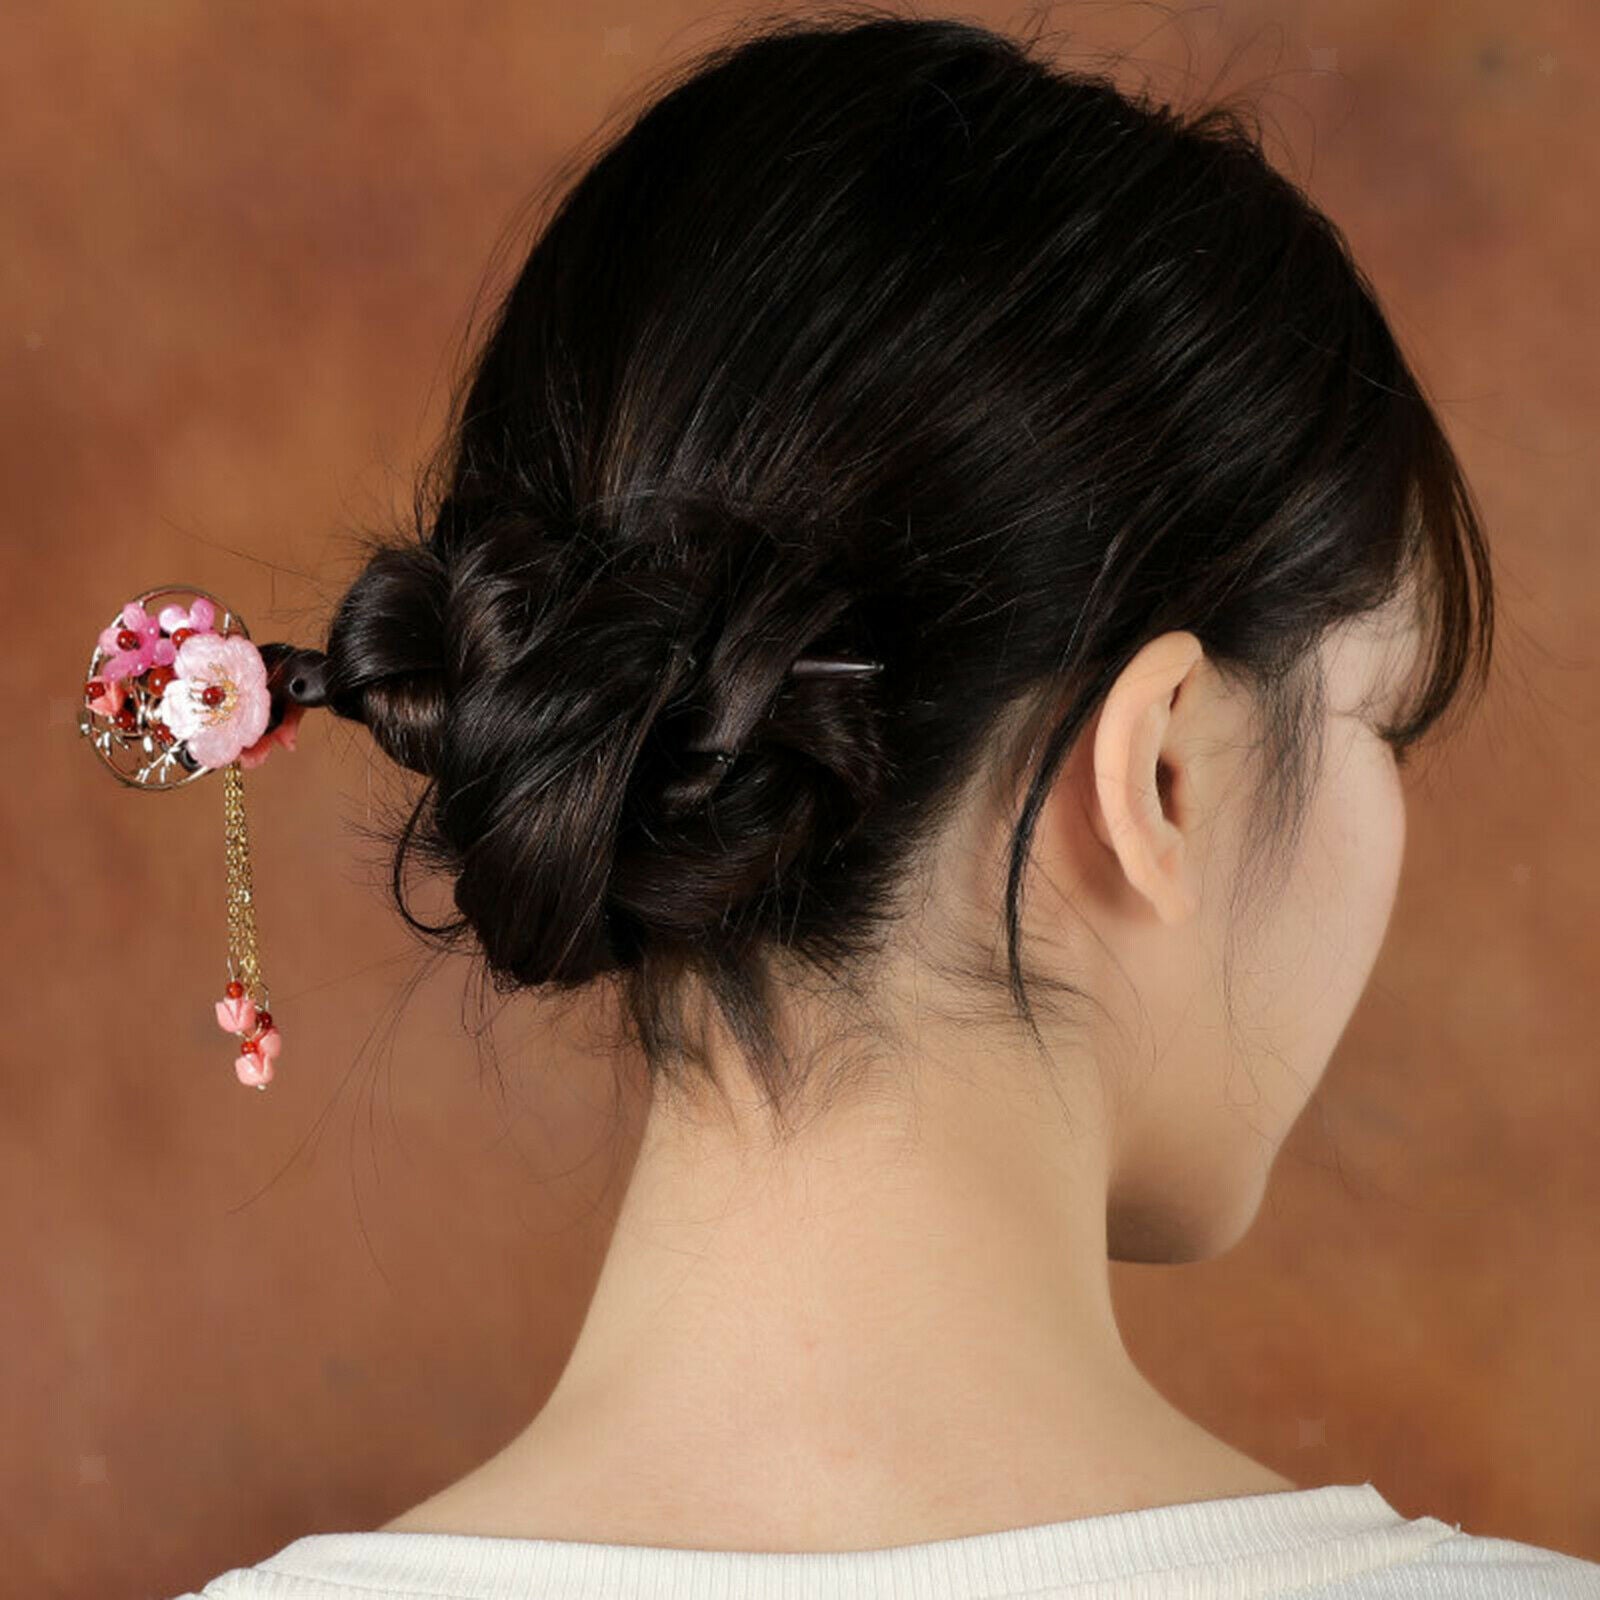 Hair Pins Wooden Hair Pin Elegant Flower Tassel Gifts for Female Girls Bride